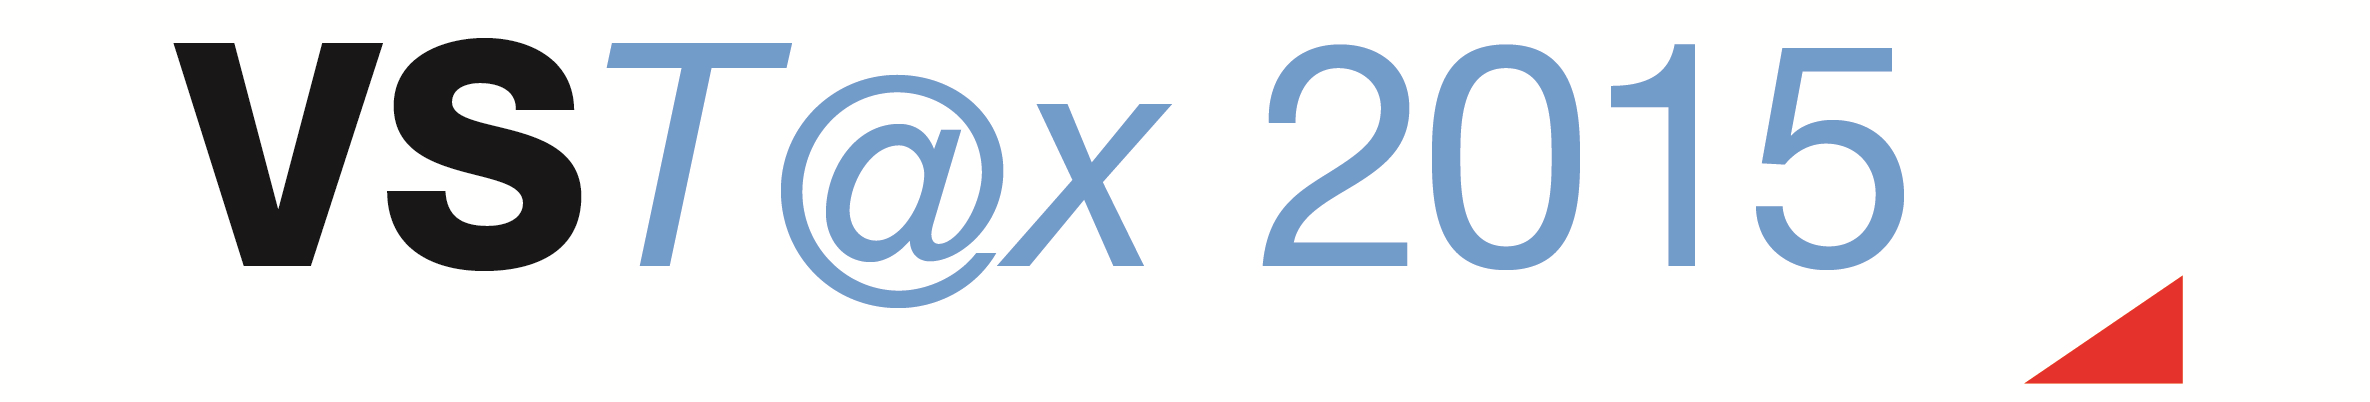 Steuerpraxis 2015 VST@x 2015 Das VSTax wurde für die Steuerperiode 2015 nochmals